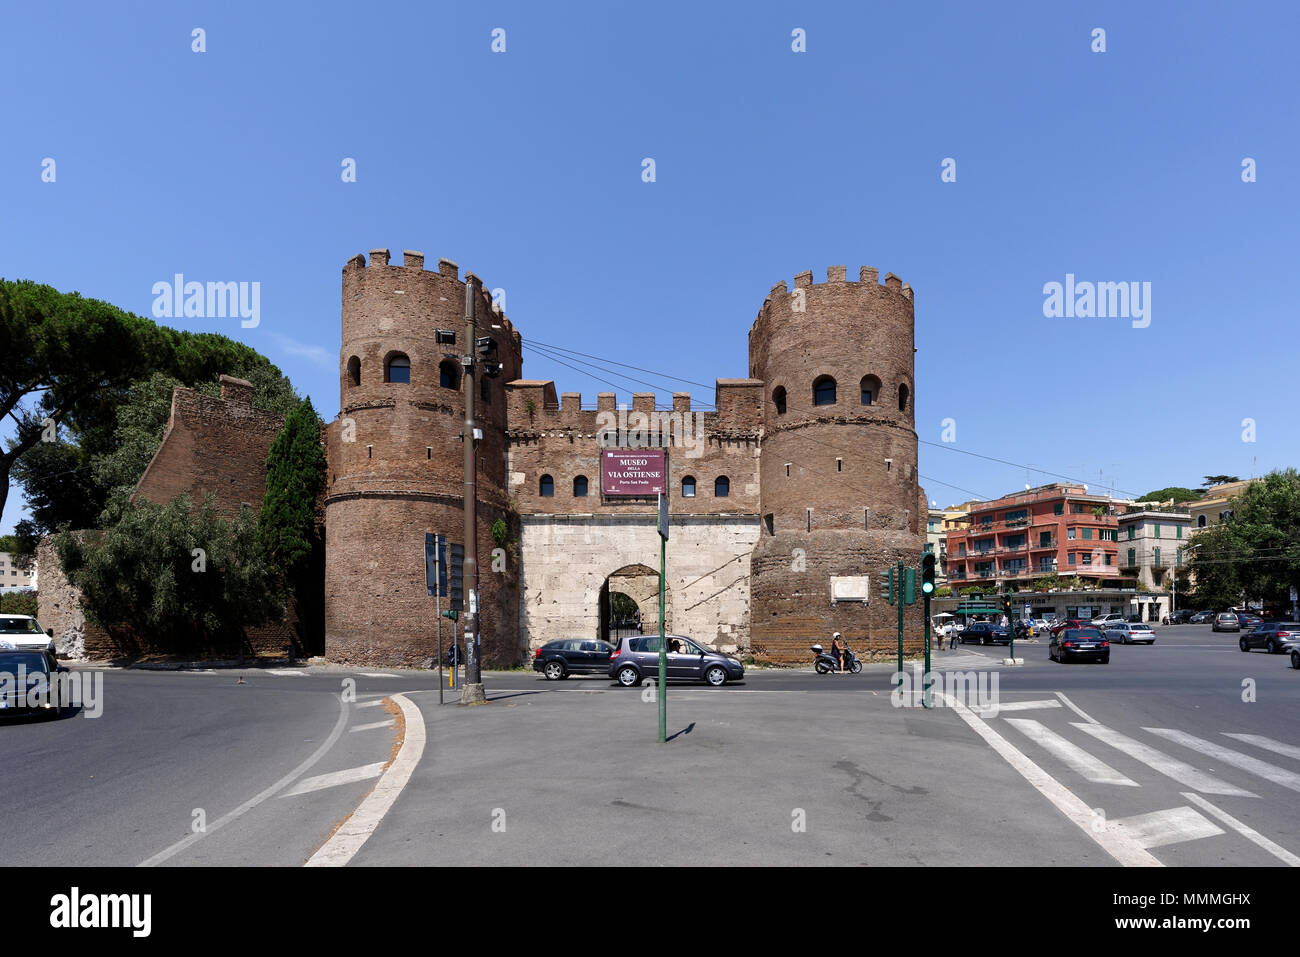 La Porta San Paolo avec des tours jumelles, l'une des portes du sud dans les 19 kilomètres de circuit de la 3ème siècle Murs Auréliens. Banque D'Images